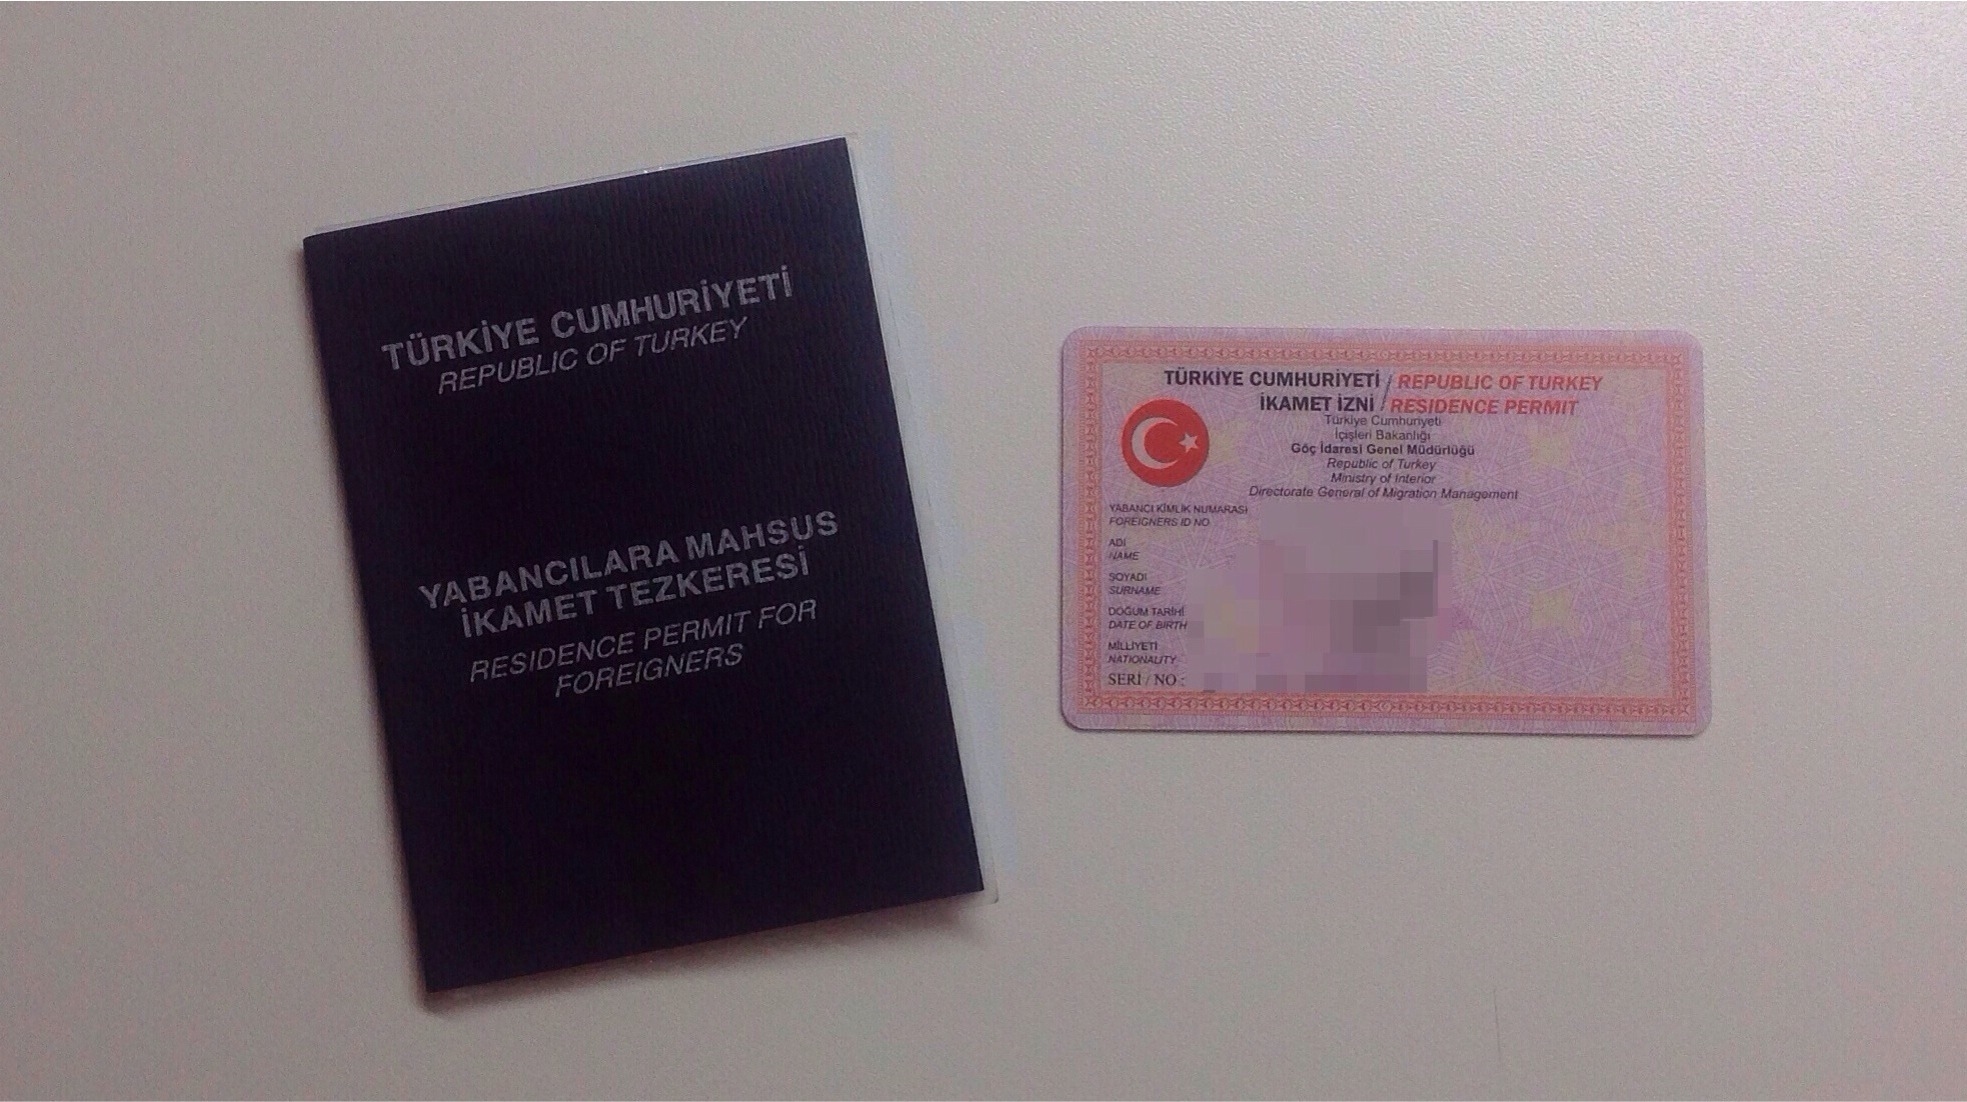 الإقامات العائلية التركية يعني حق فئات معينة منح الزوجة والأولاد تحت سن الثامنة عشر تصريح إقامة